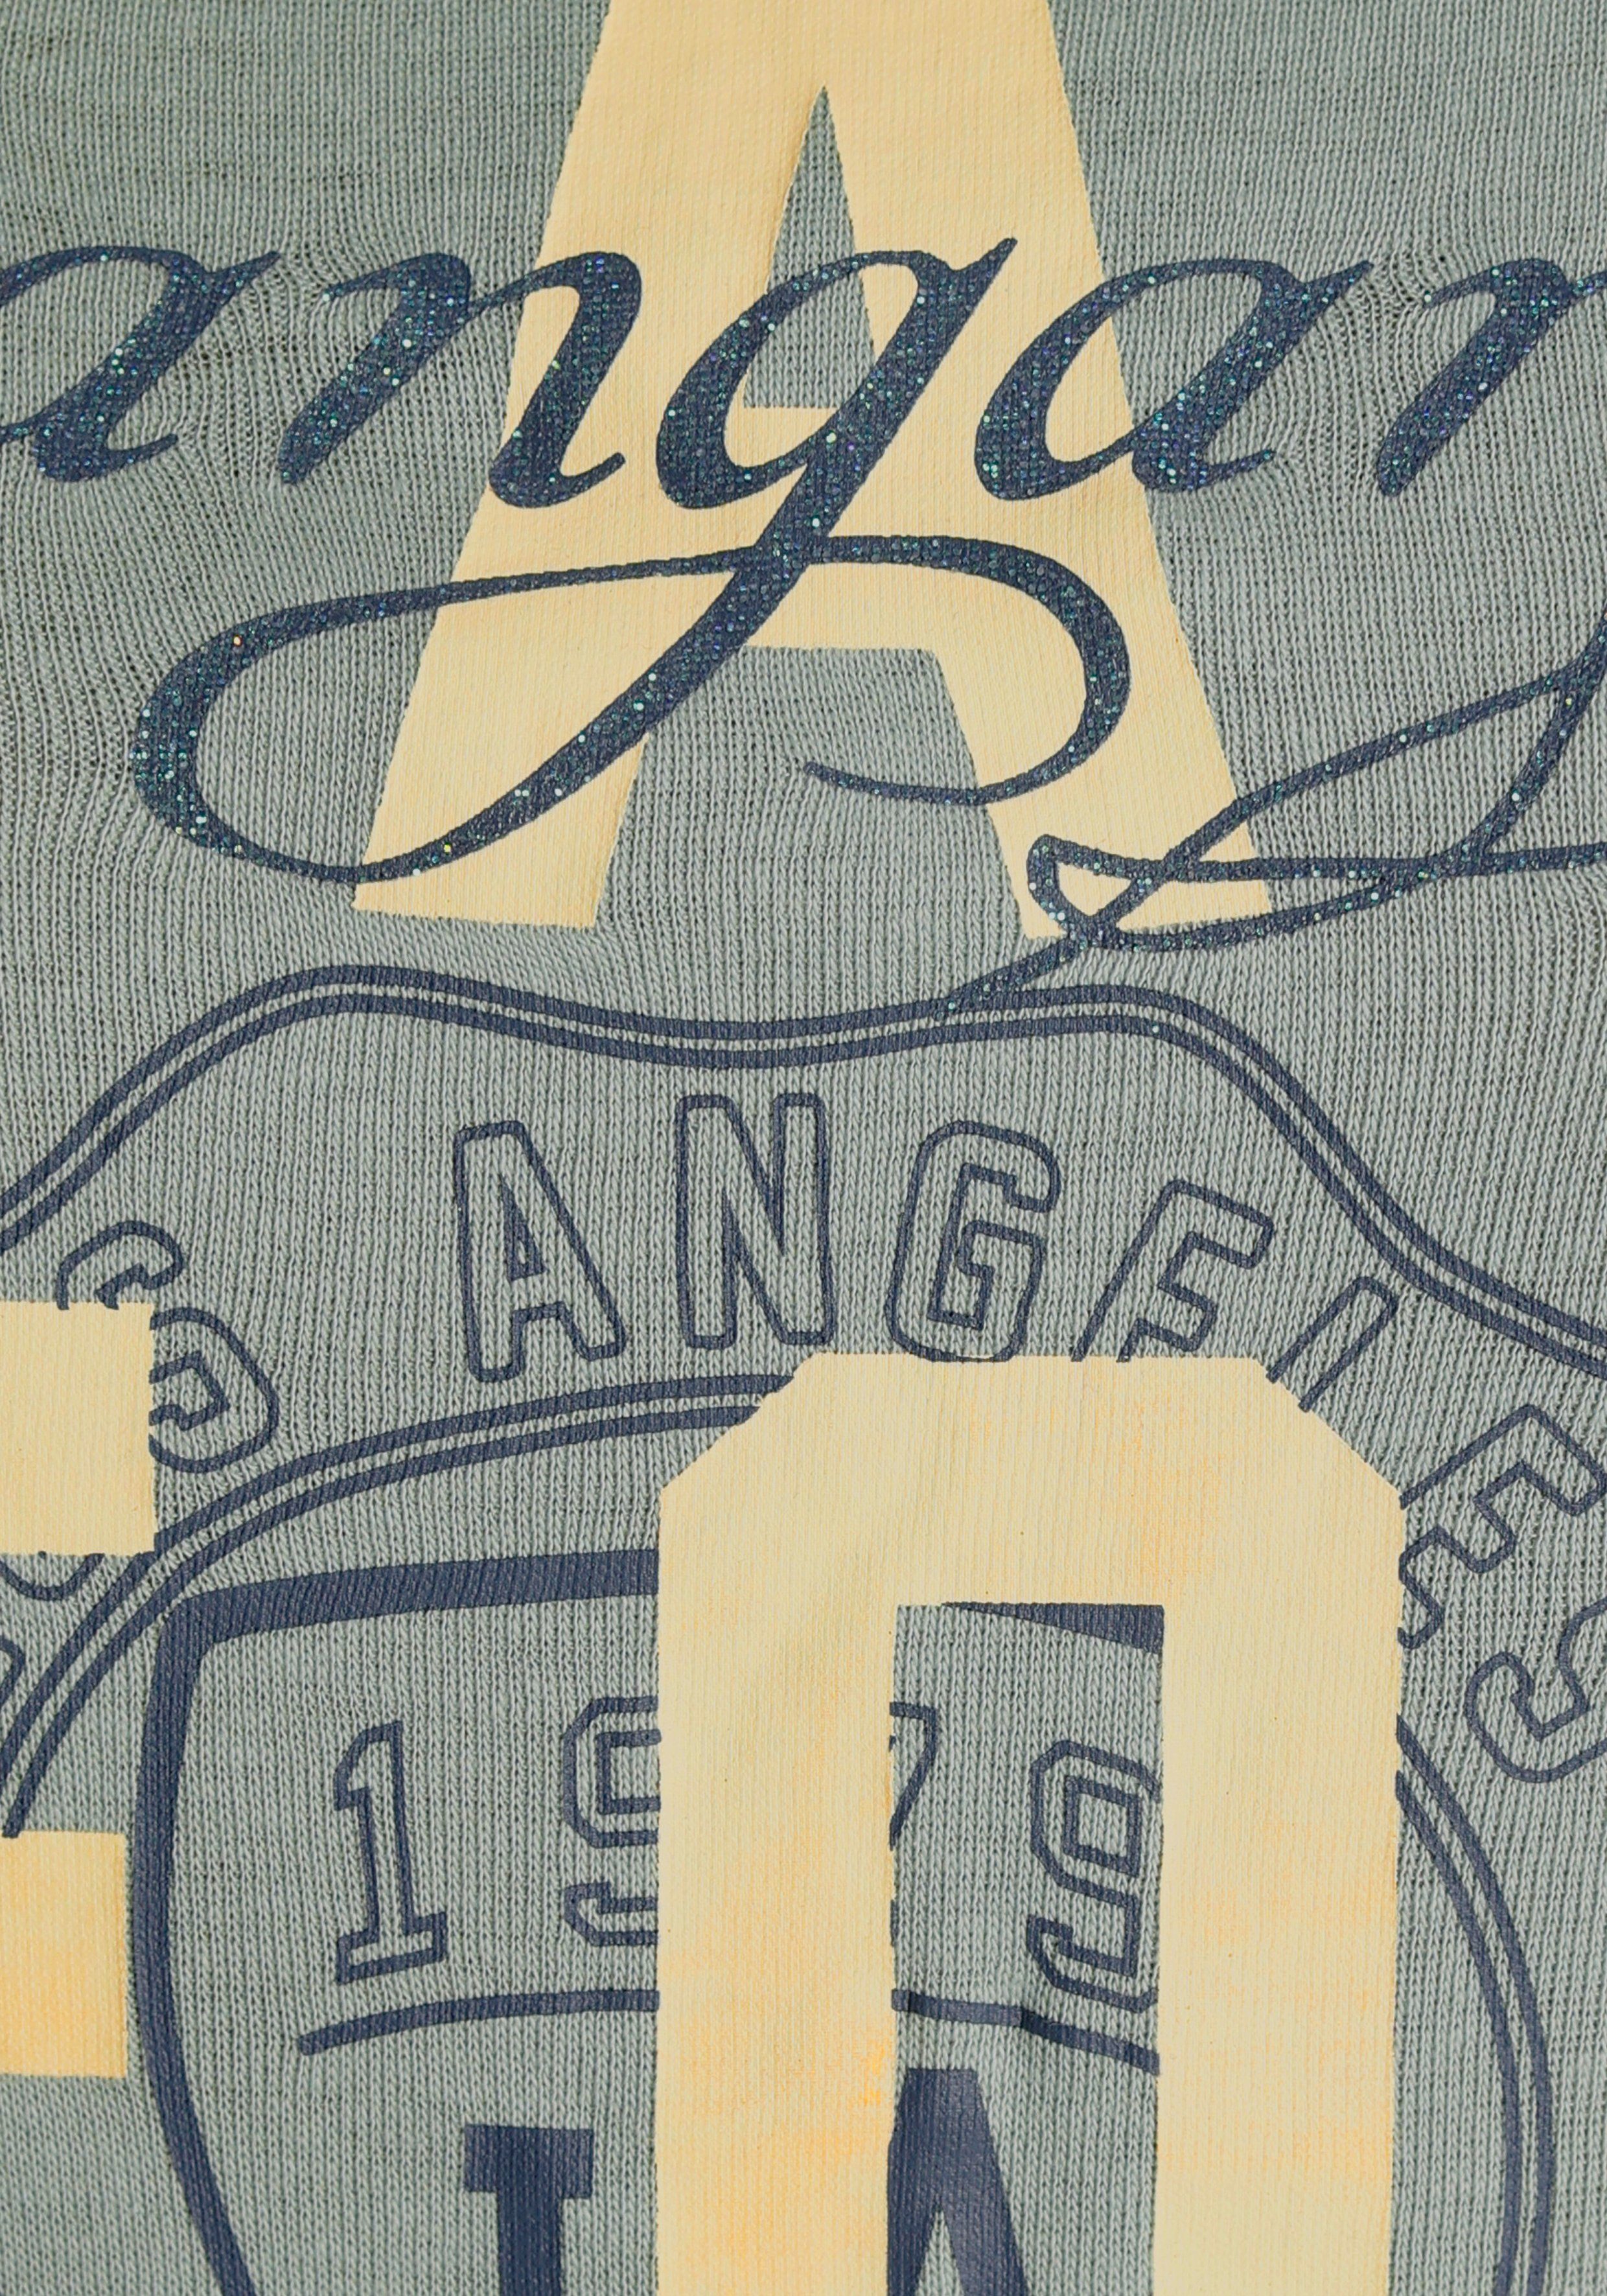 KangaROOS Print-Shirt mit Logodruck im khakigrau California-Style KOLLEKTION NEUE 